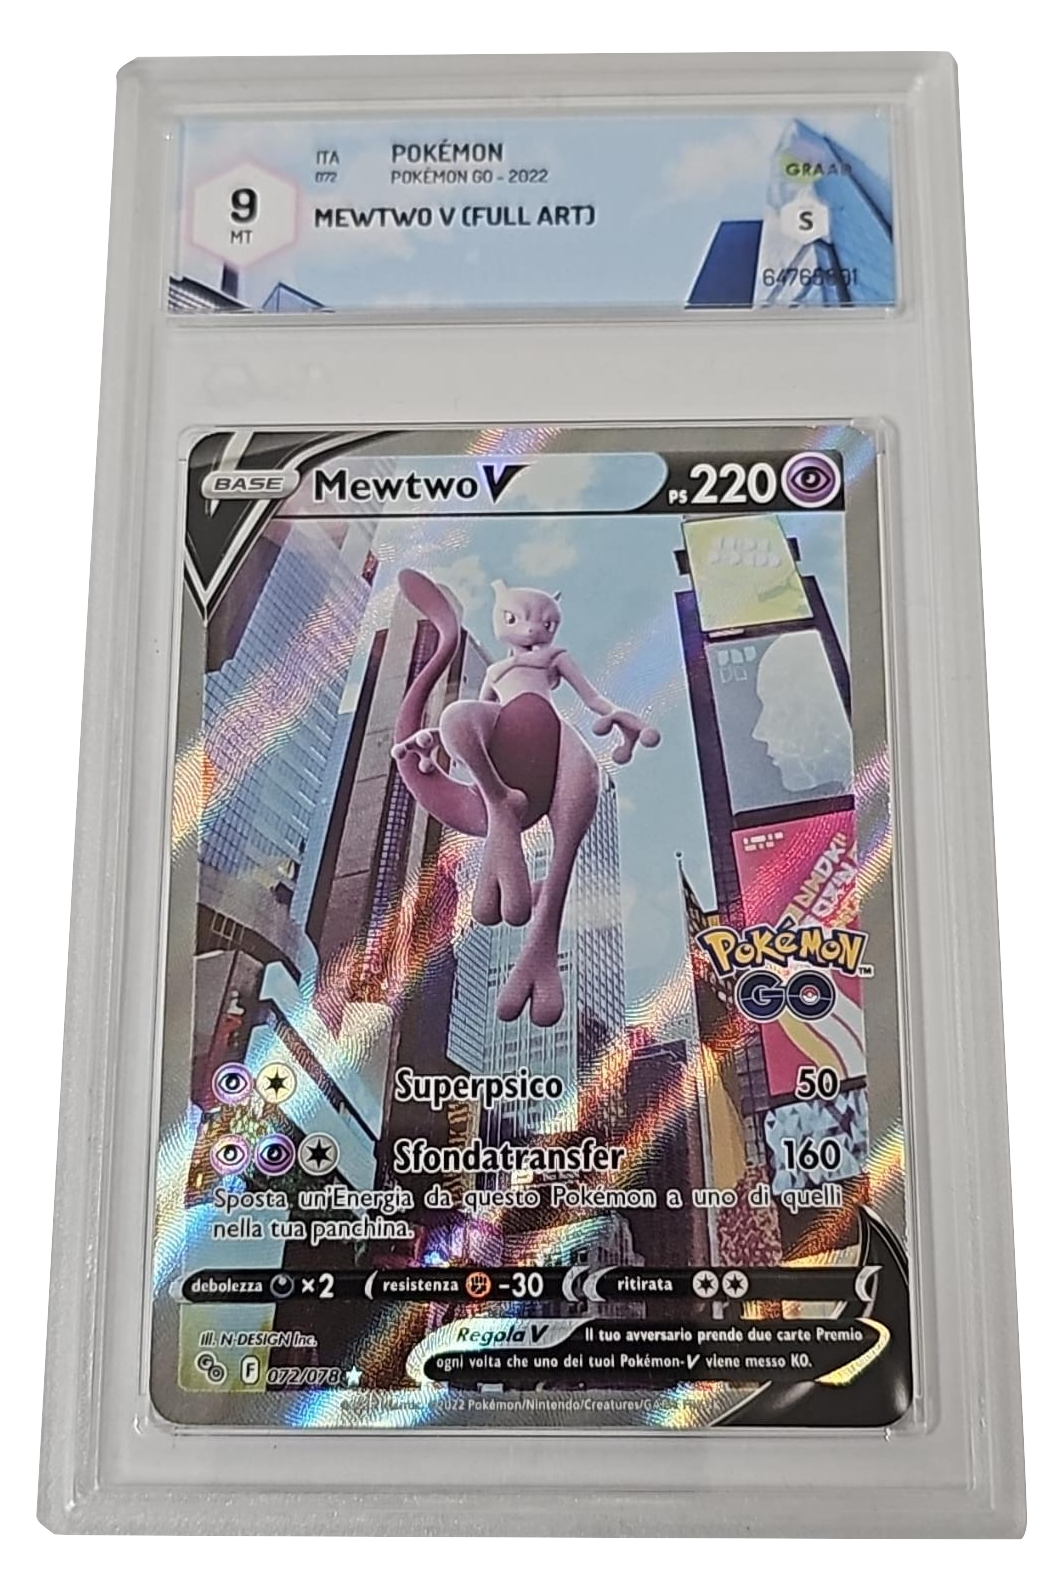 Mewtwo V 072/078 - Pokemon GO - 2022 - GRAAD 9 Mint - CARTA GRADATA ITA